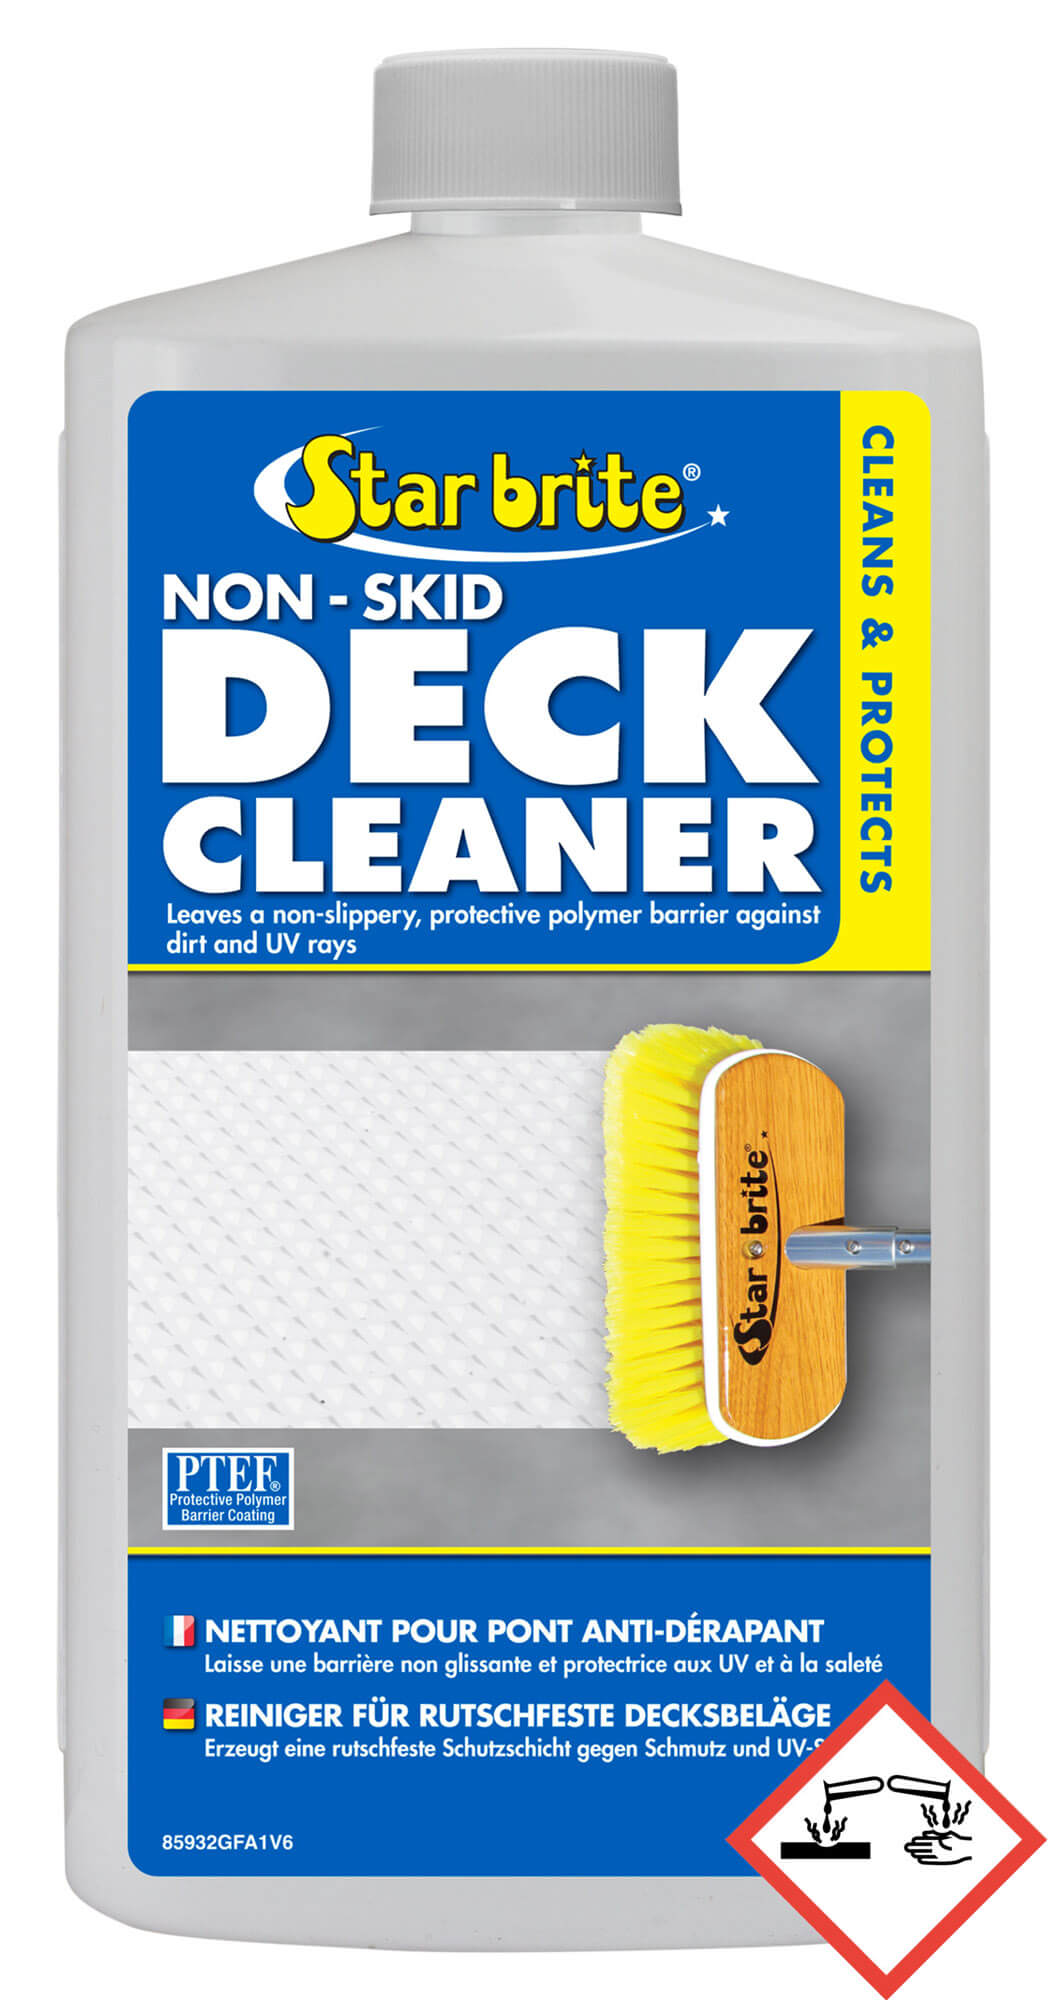 Non Skid Deck Cleaner